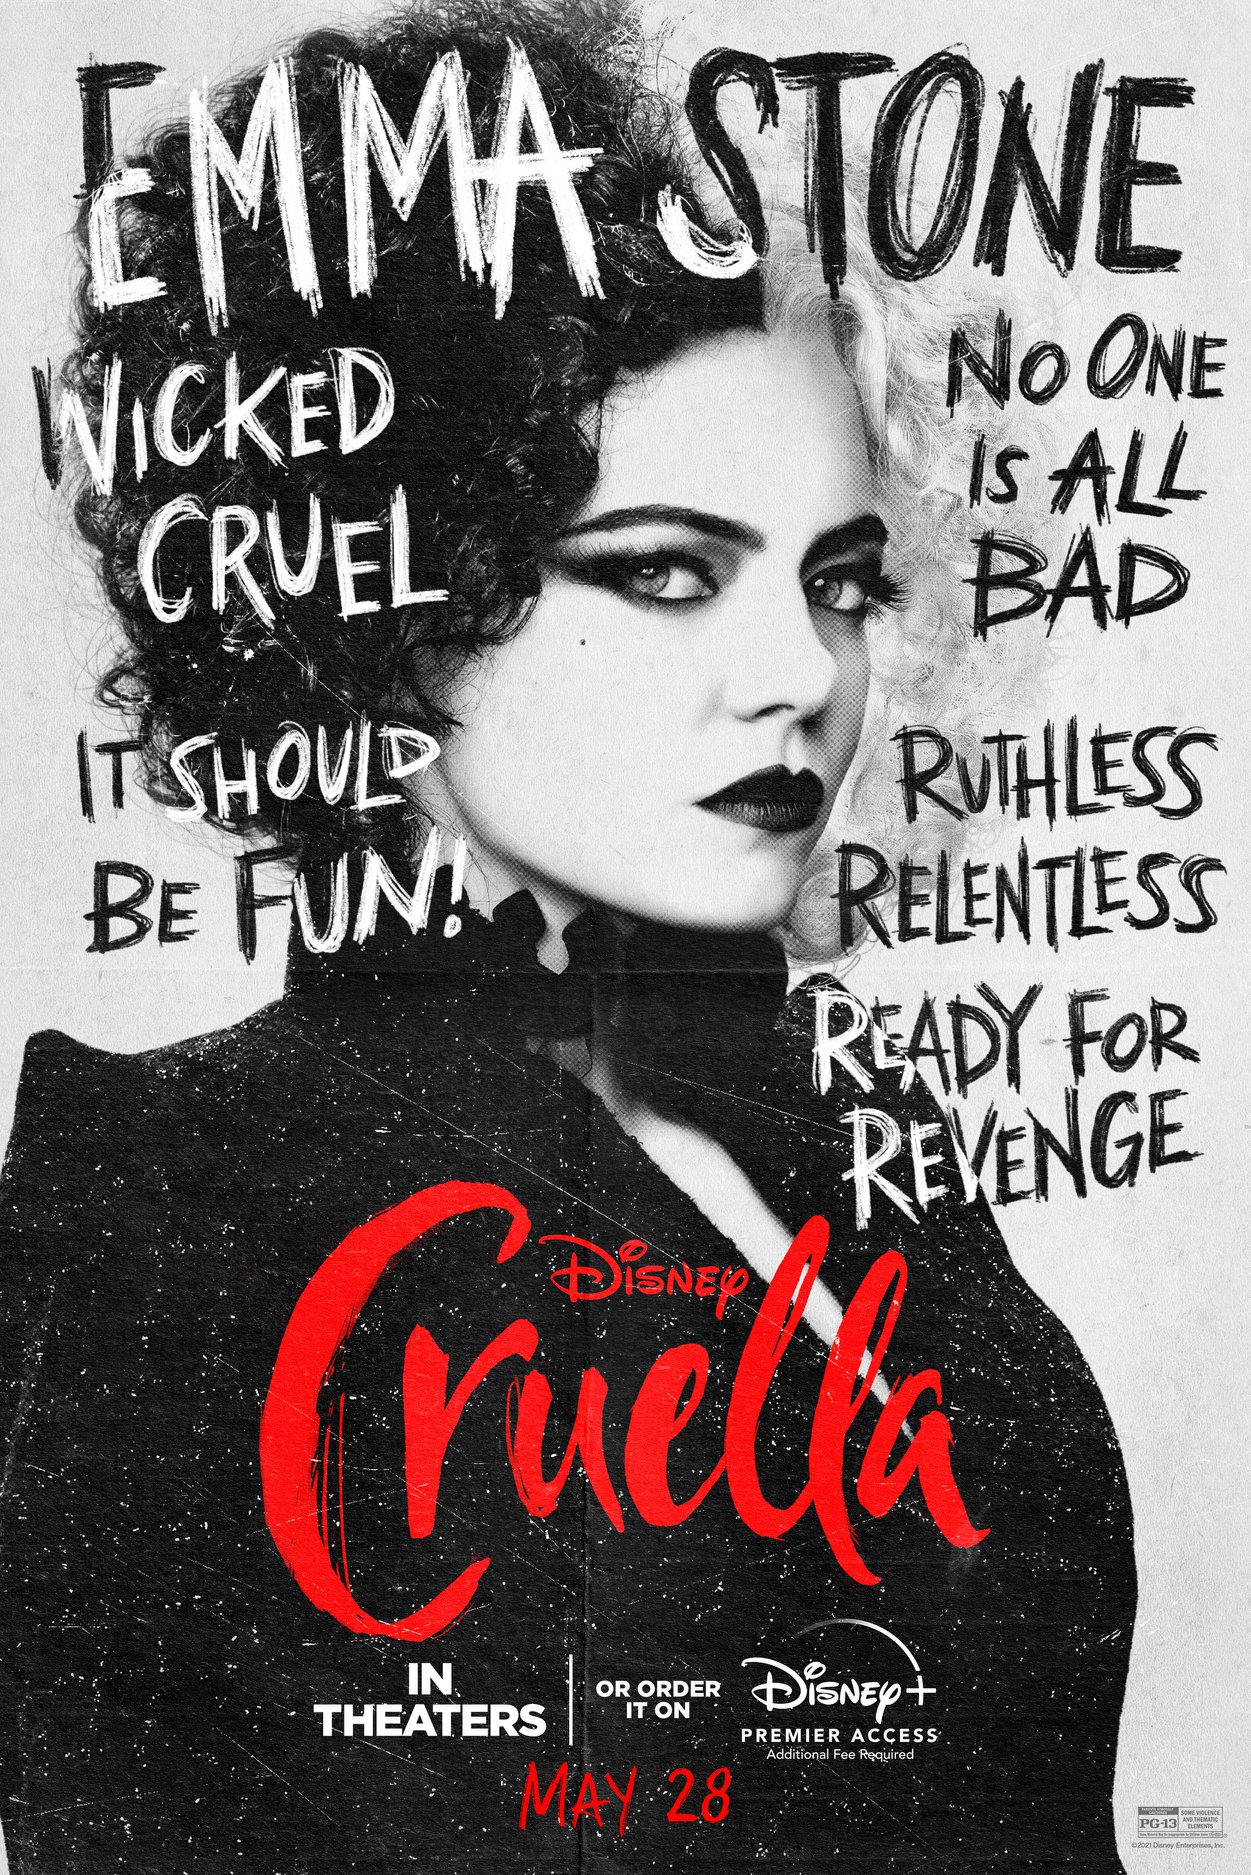 Disney Plans Cruella De Vil Film, Movies